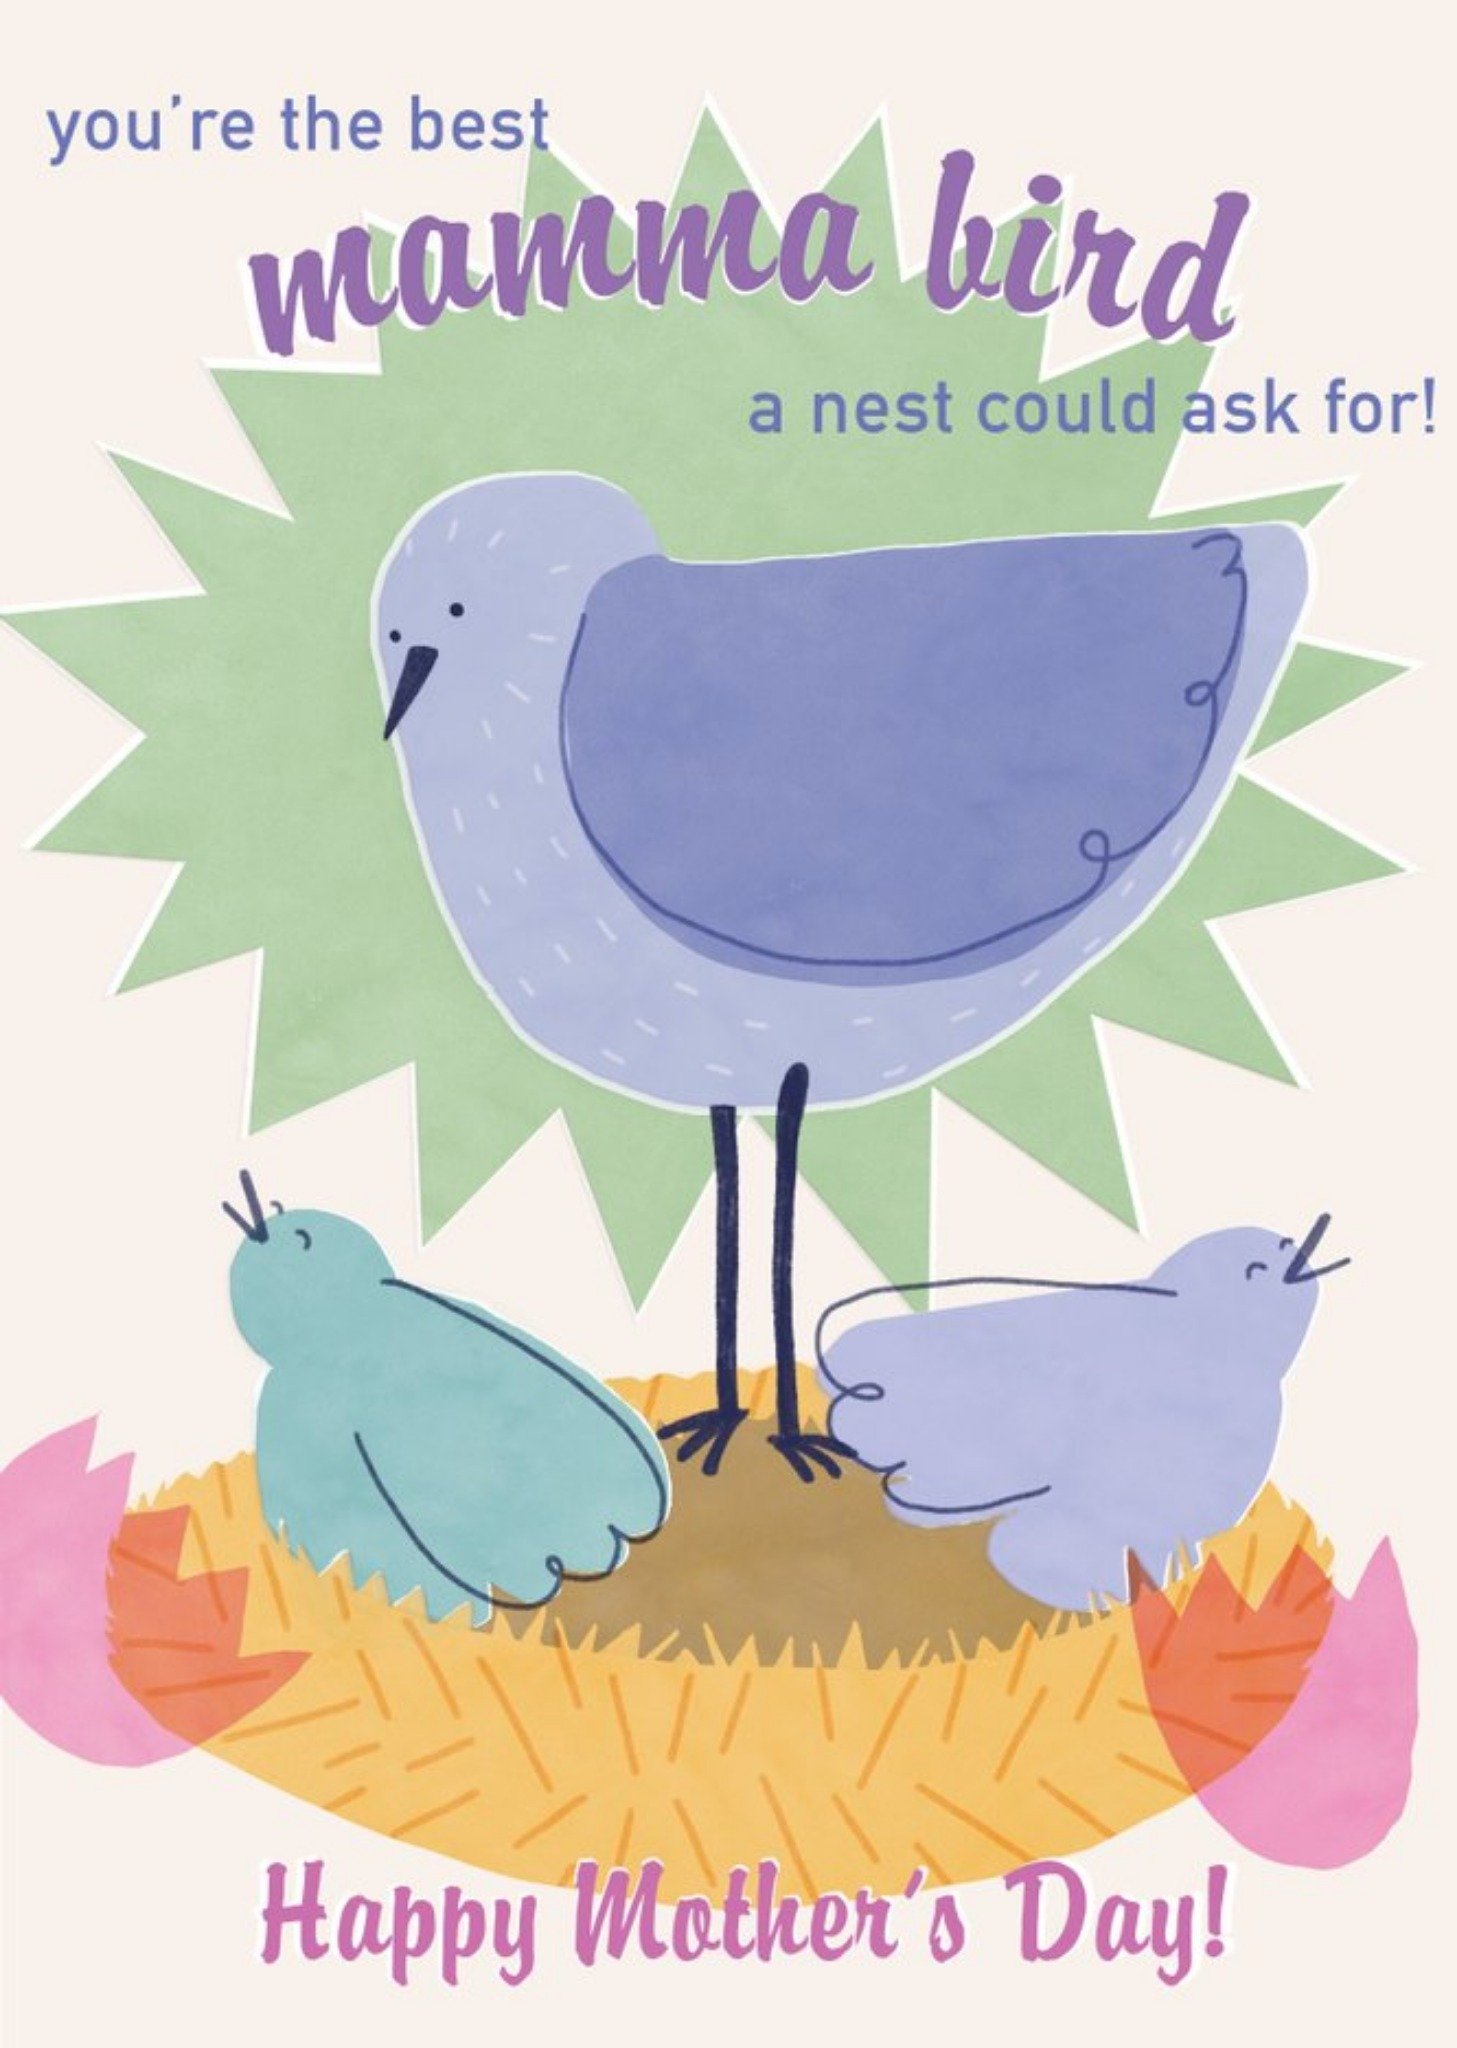 Moonpig The Best Mamma Bird Mother's Day Card Ecard